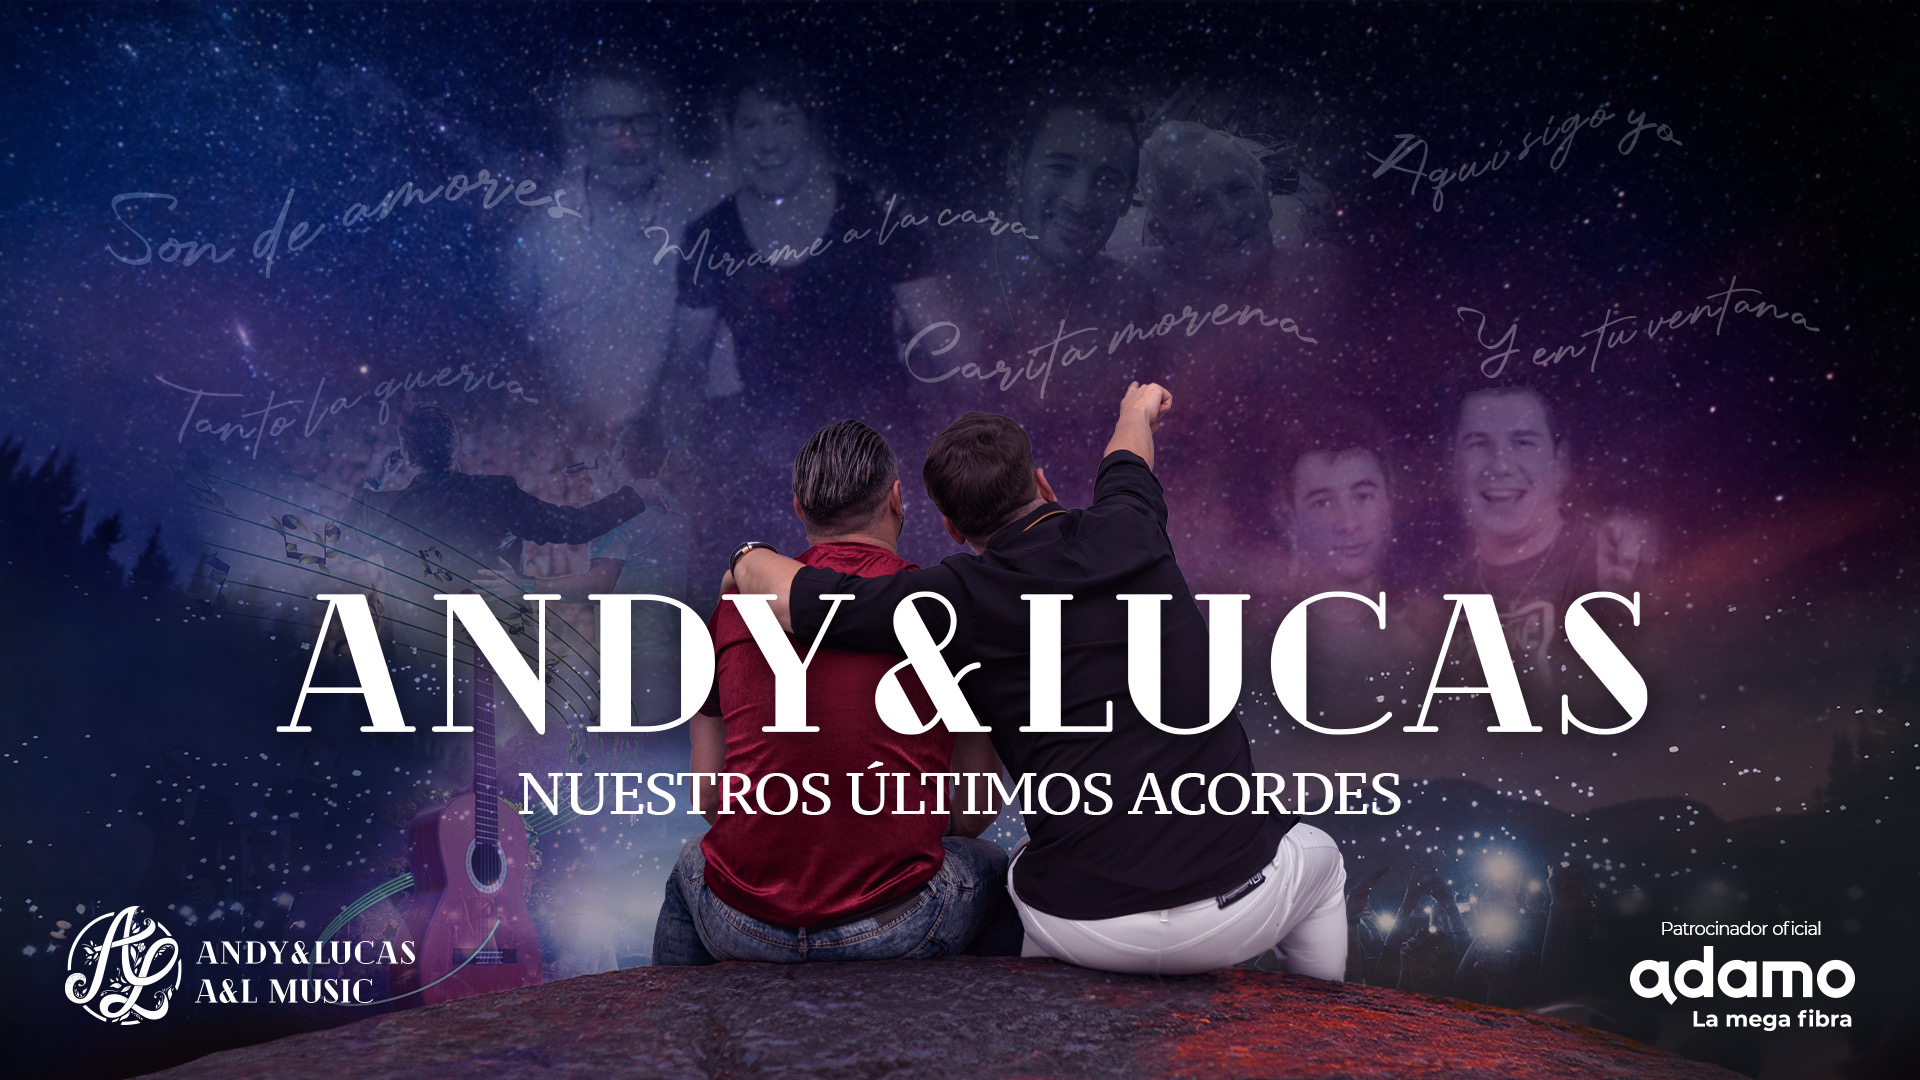 andy-y-lucas-nuestros-ultimos-acordes-en-cadiz-65b0e7923752c2.32678560.jpeg